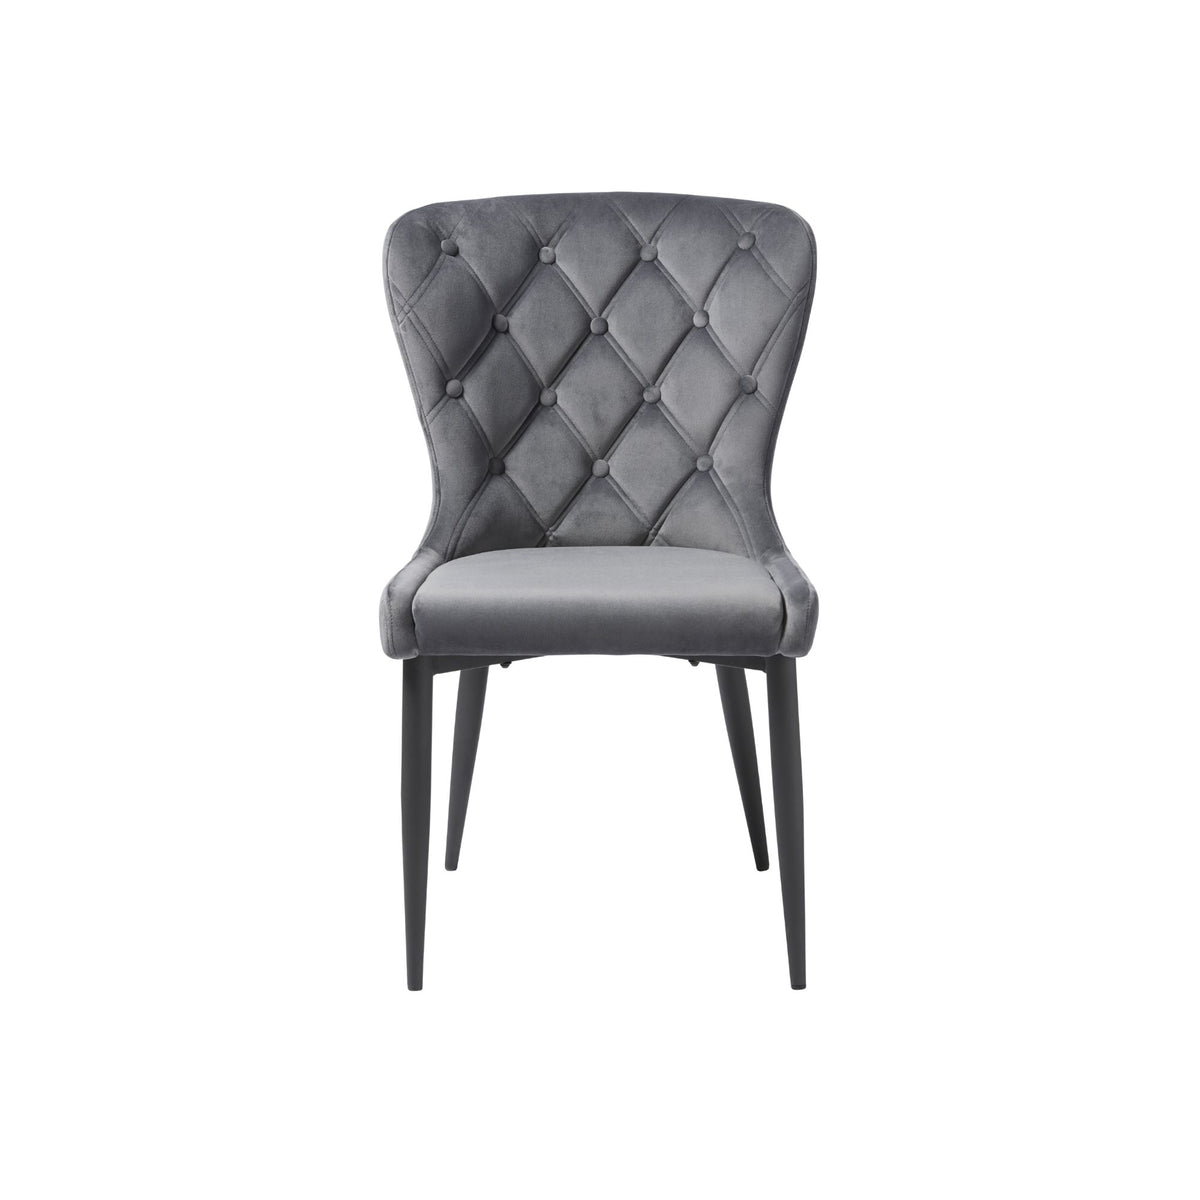 Granby Chair - Granite Velvet Fabric - Black Legs